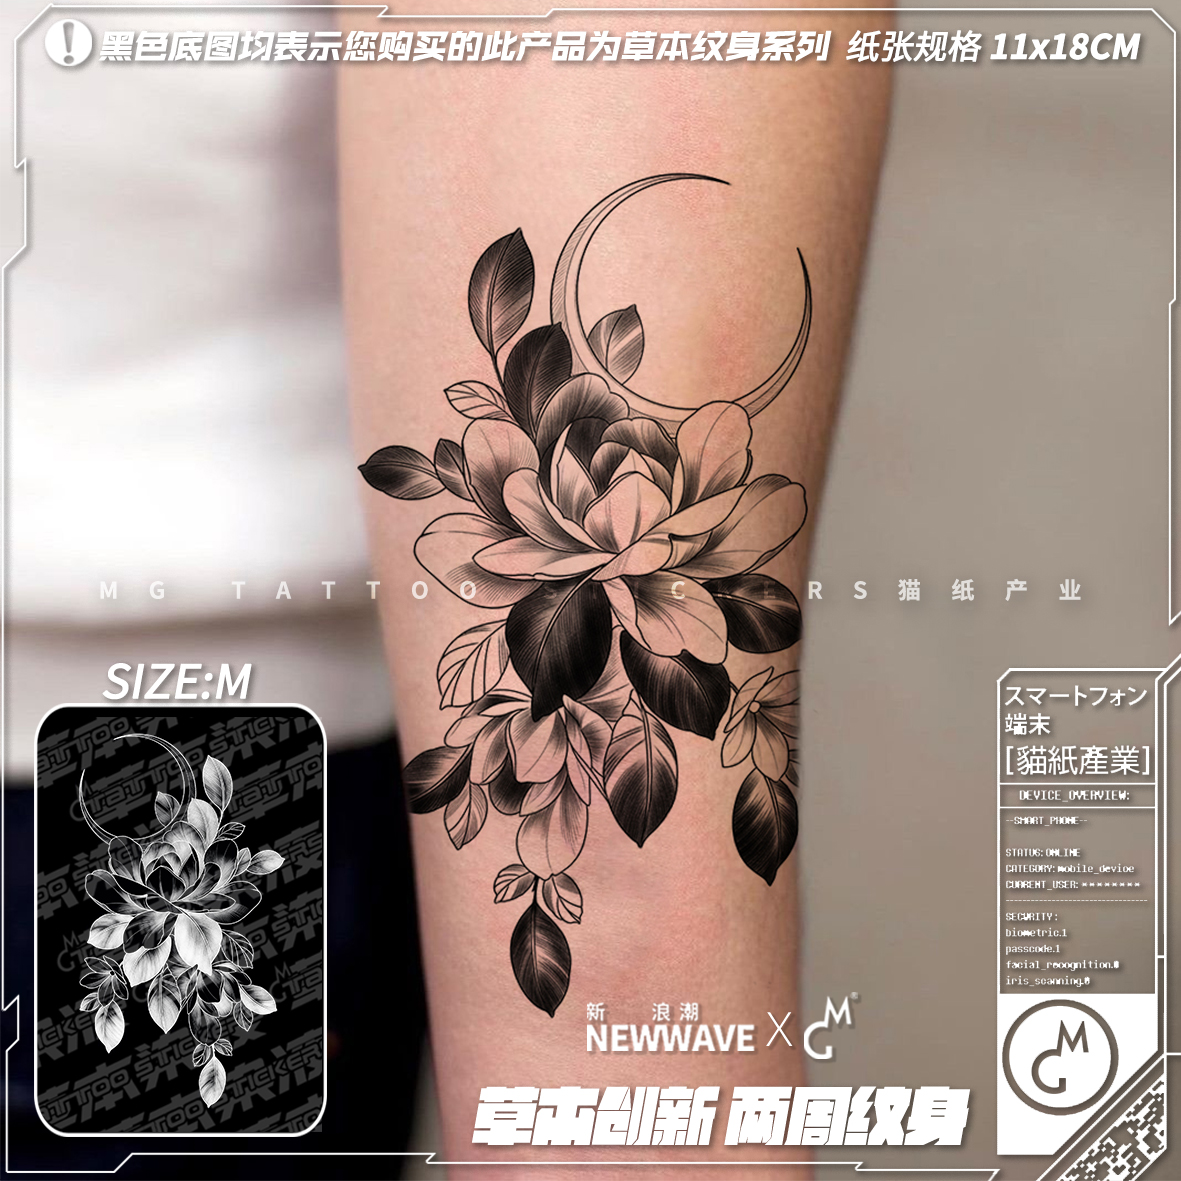 MG tattoo 草本染液北欧素雅植物新月花朵少女文艺草本持久纹身贴